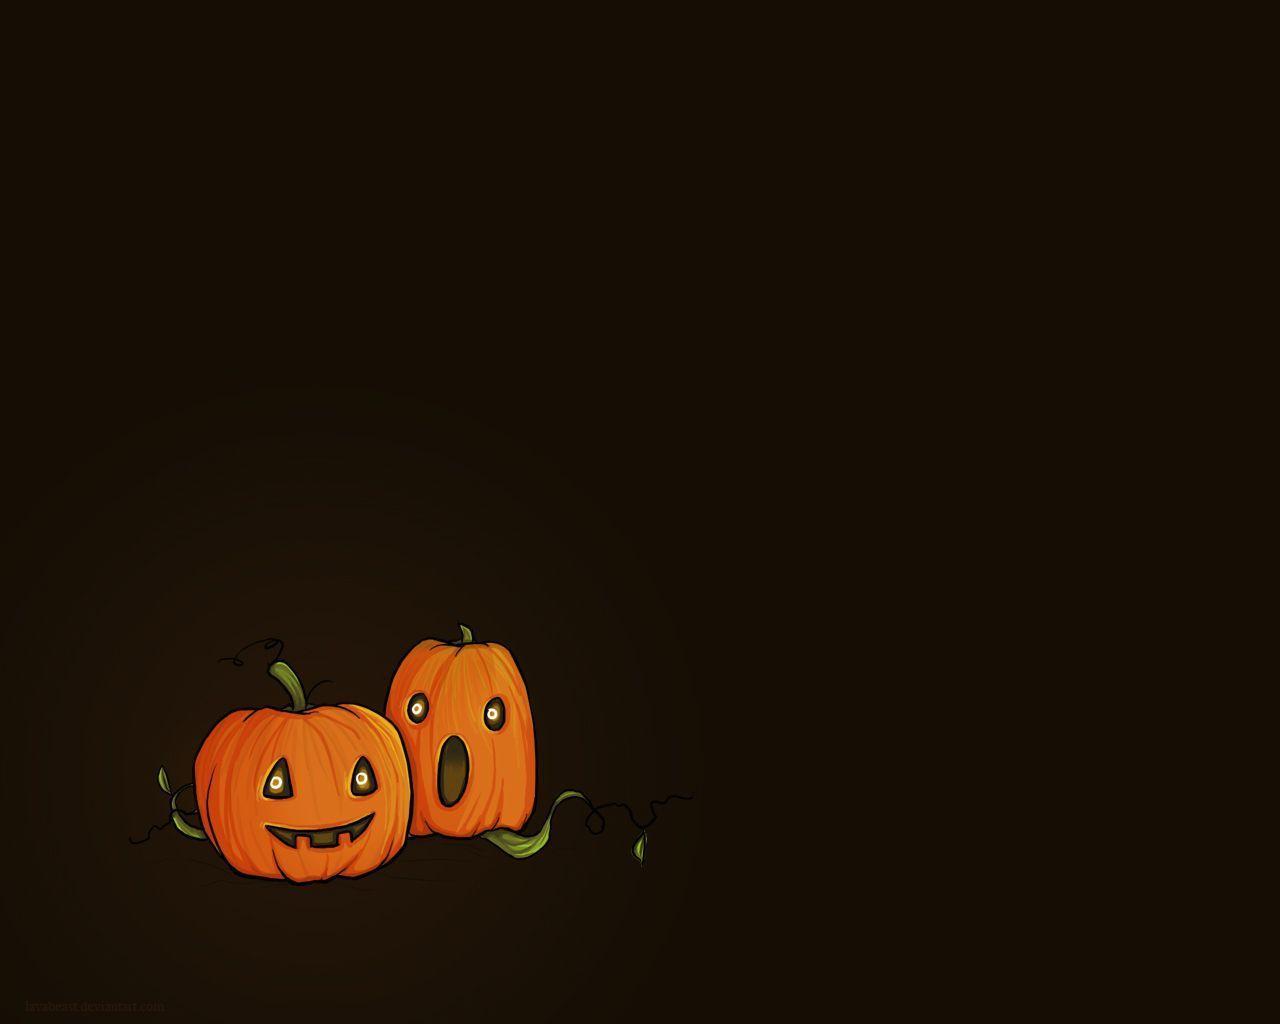 Wallpaper For > Cute Halloween Pumpkin Wallpaper